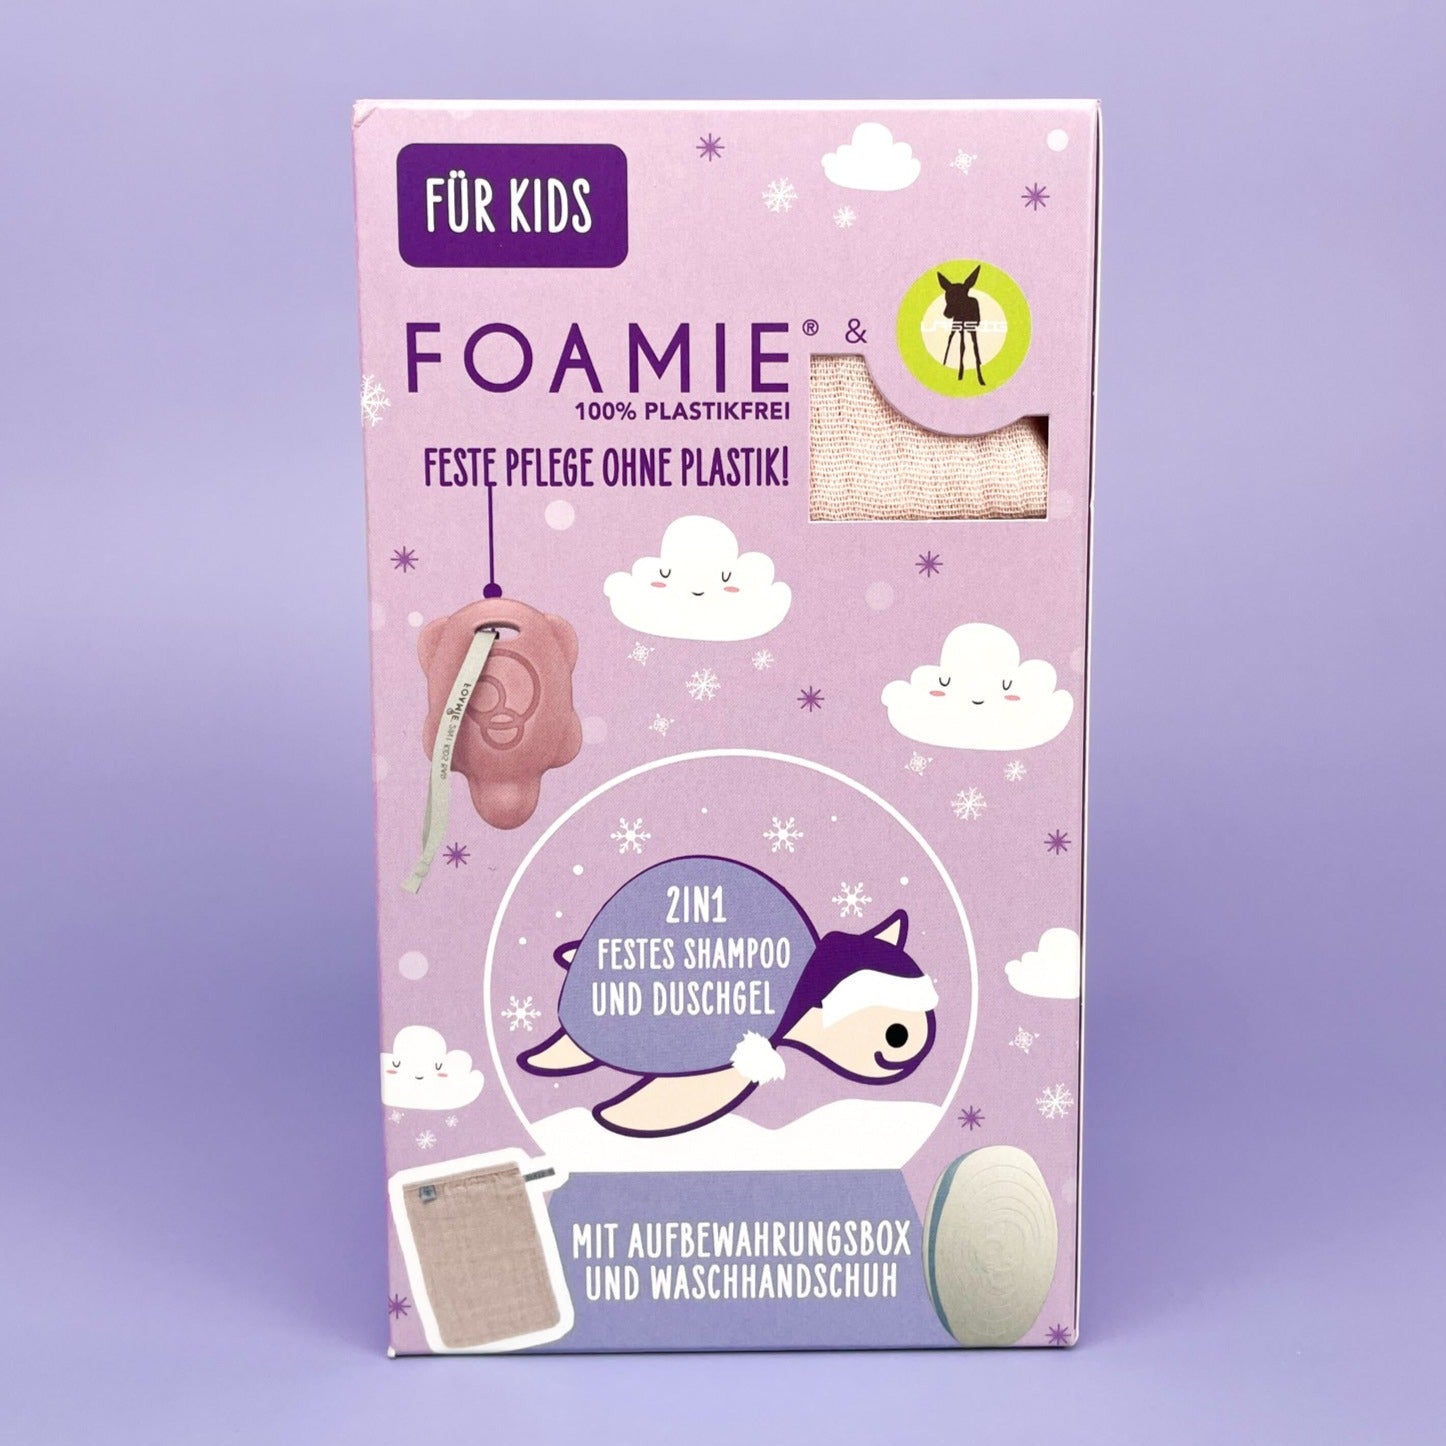 Foamie X Winter für | Kinder Foamie Online Shop Lässig Set Online – Offizieller Shop – Offizieller Foamie